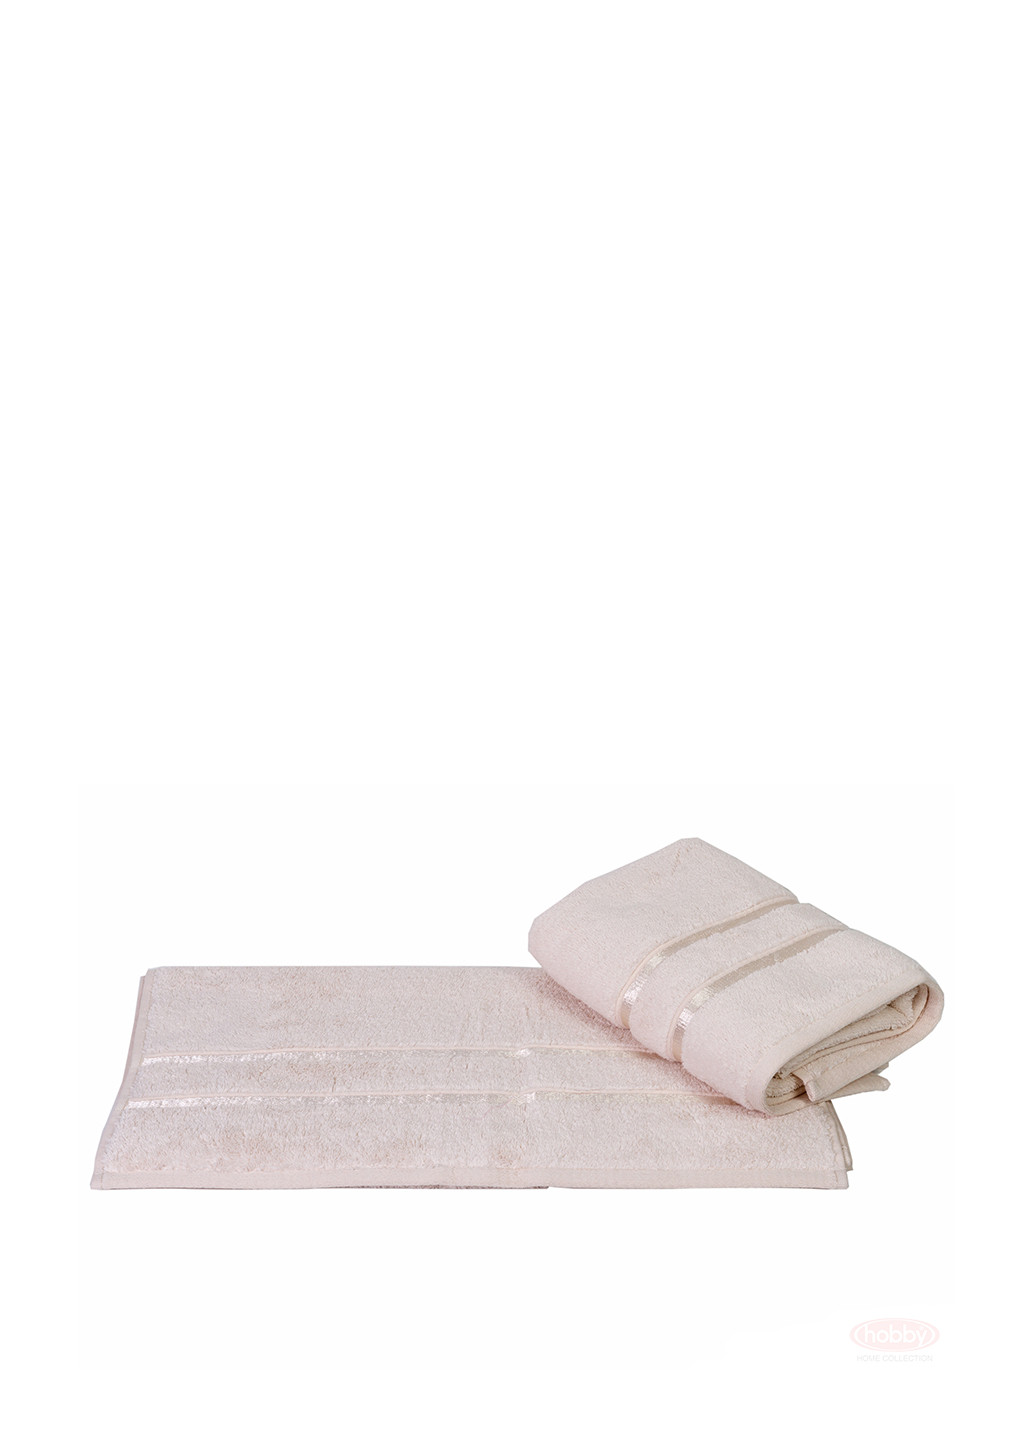 Hobby полотенце, 70х140 см полоска бледно-розовый производство - Турция